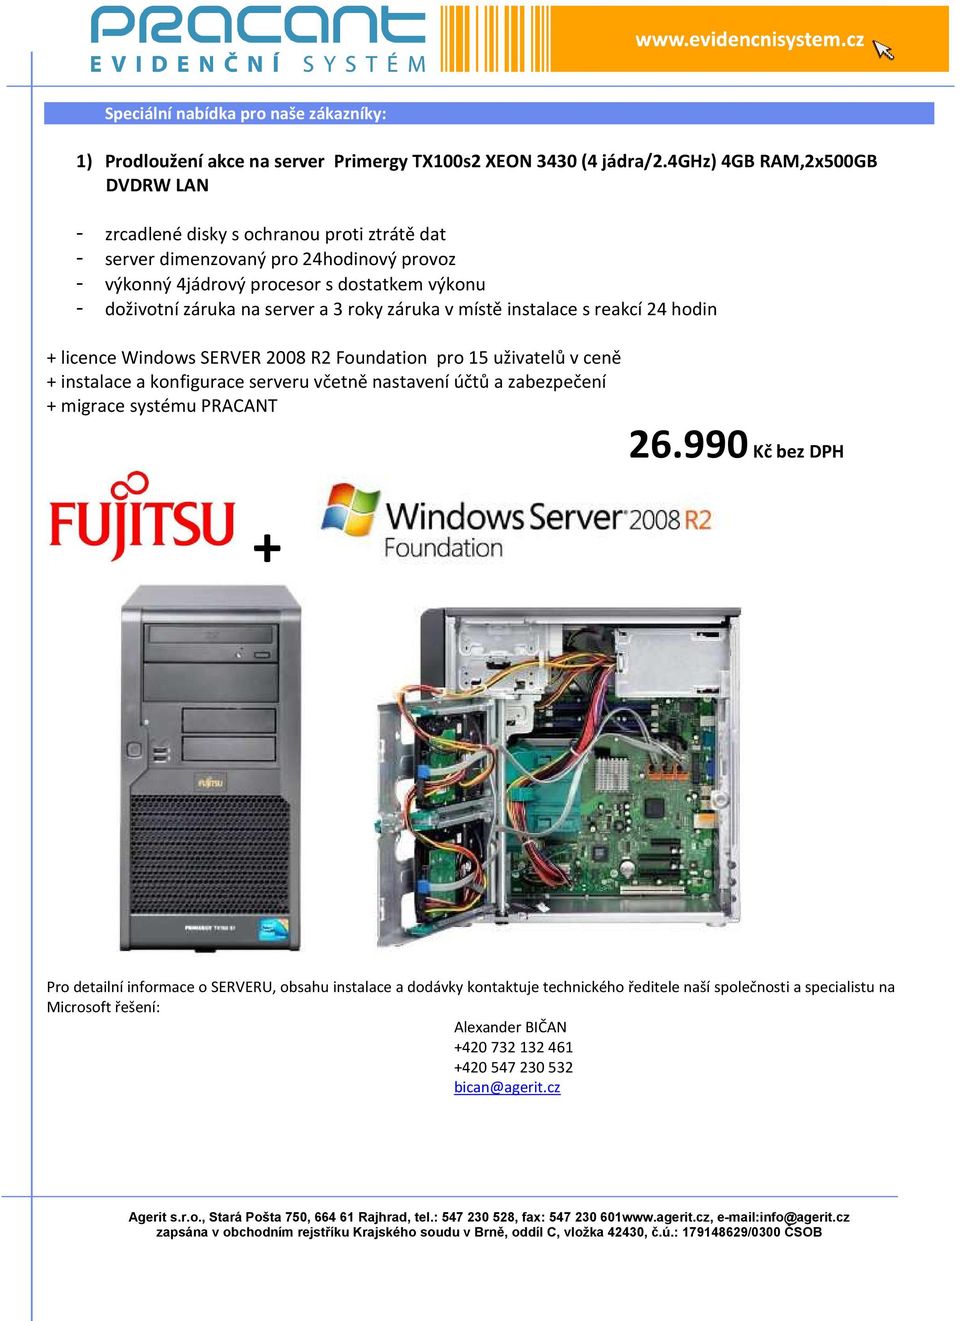 na server a 3 roky záruka v místě instalace s reakcí 24 hodin + licence Windows SERVER 2008 R2 Foundation pro 15 uživatelů v ceně + instalace a konfigurace serveru včetně nastavení účtů a